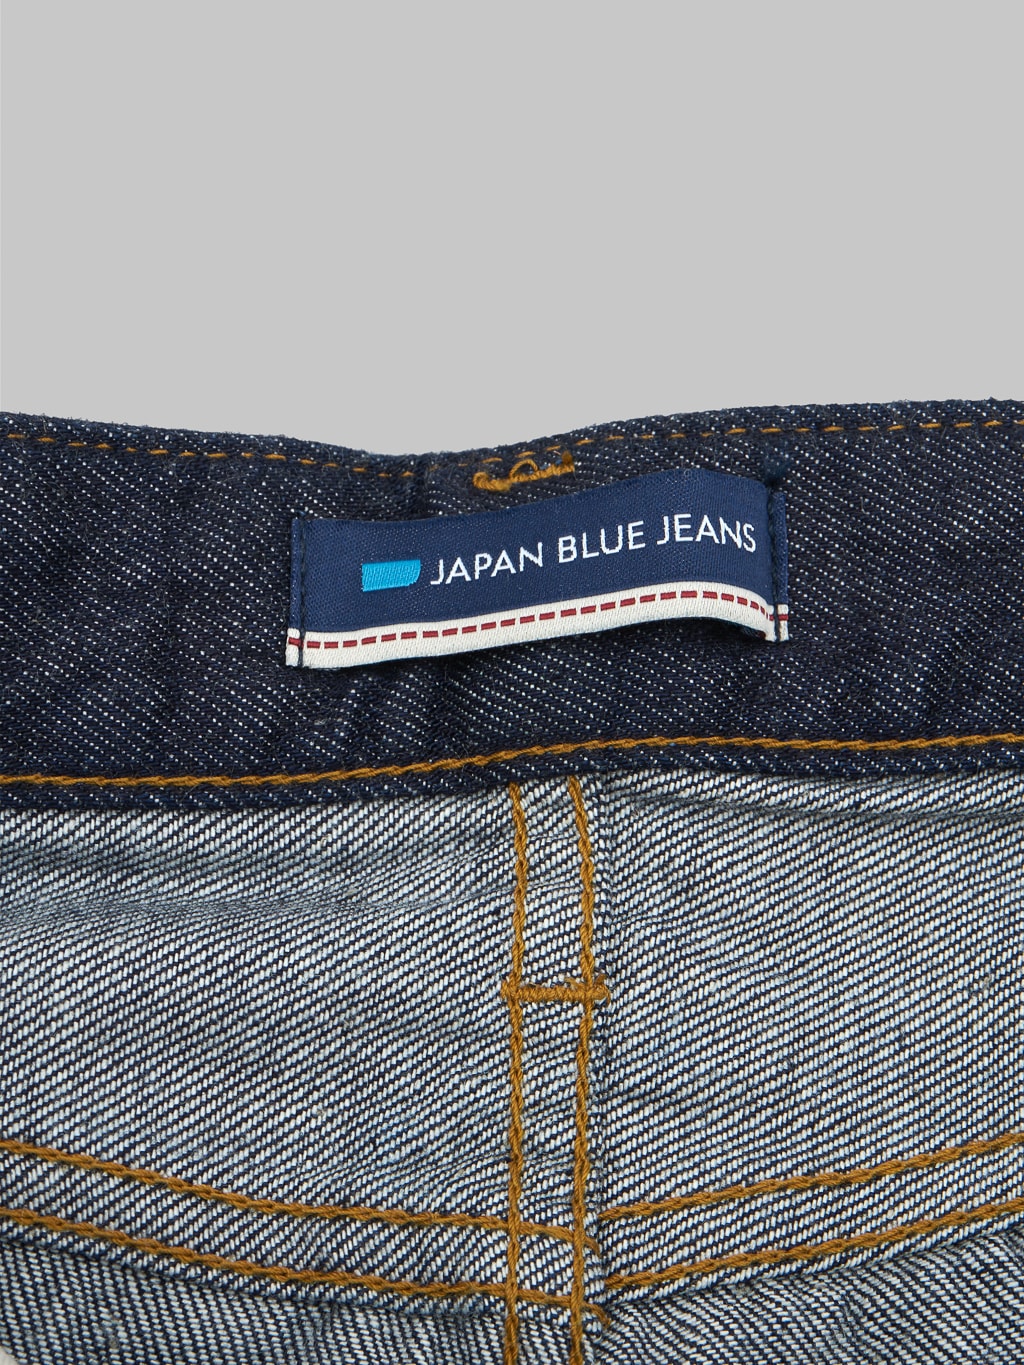 Japan Blue J508 lightweight selvedge denim loose Jeans interior label